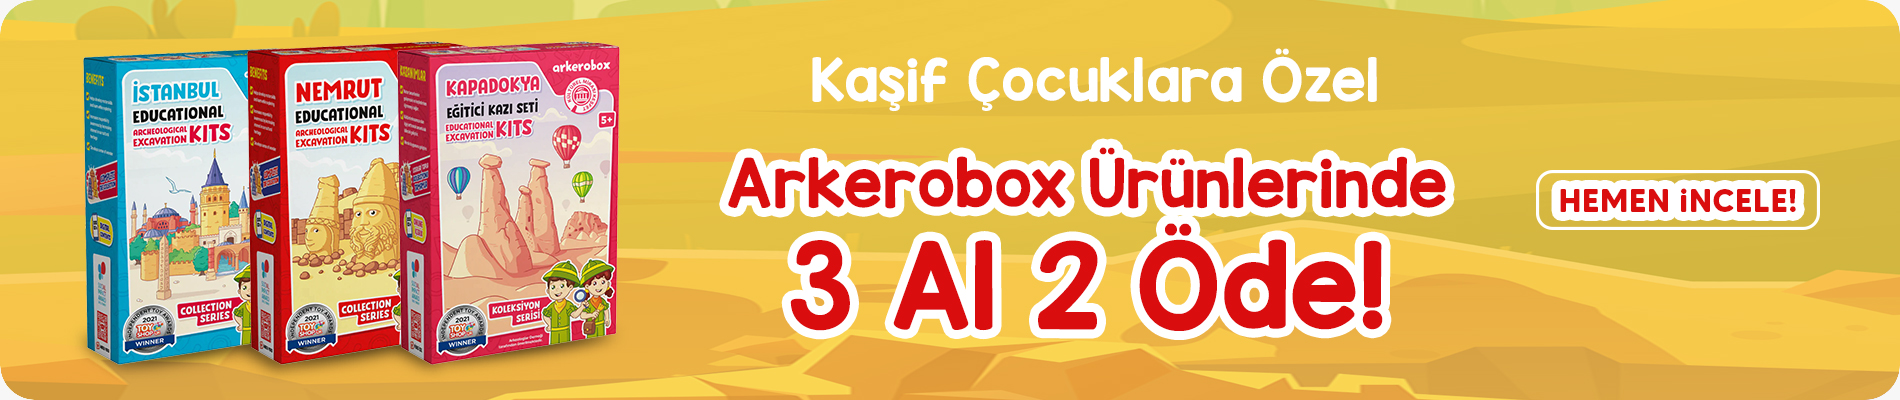 arkerobox-1900-400.jpg (538 KB)